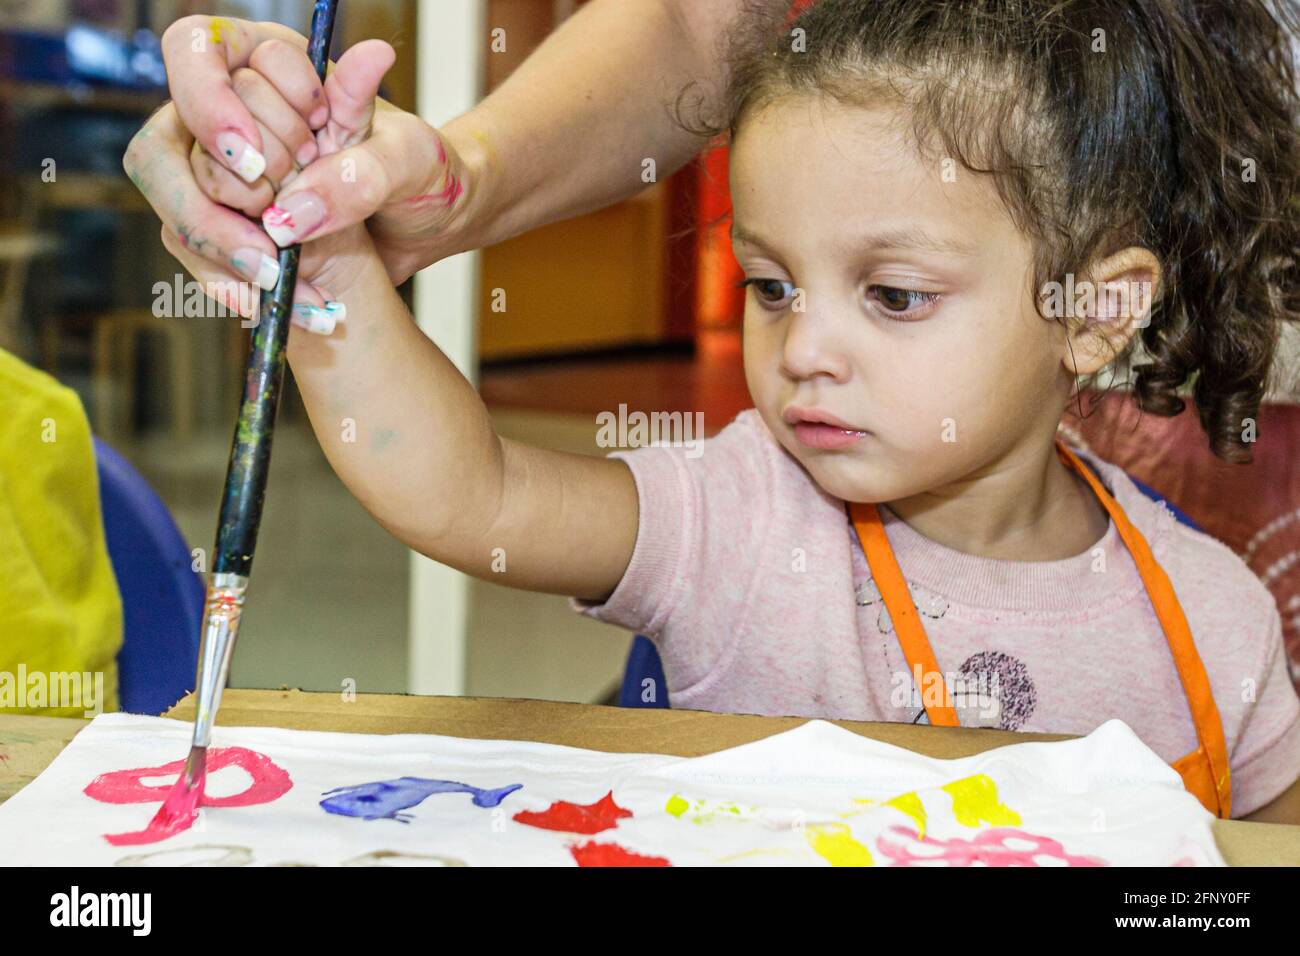 Miami Florida, Museo de los Niños camiseta taller de decoración, chica hispana niño niño niño pintura de la mano de los padres ayudar a guiar, Foto de stock